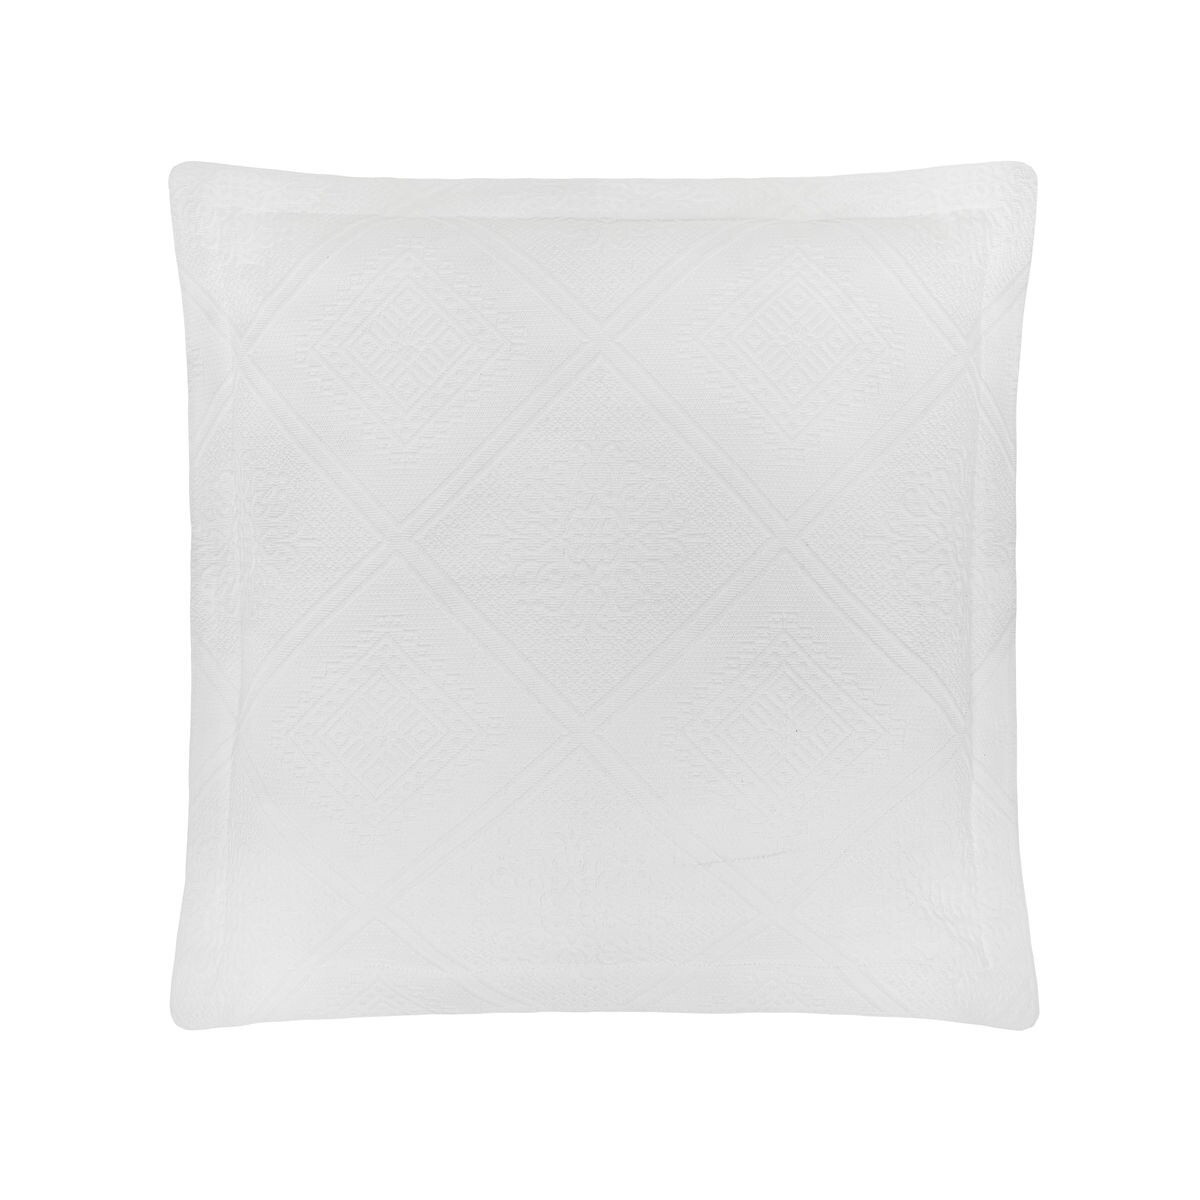 Жаккардовая хлопковая подушка Portofino. Coincasa, белый подушка подушка 50х50см coincasa белый